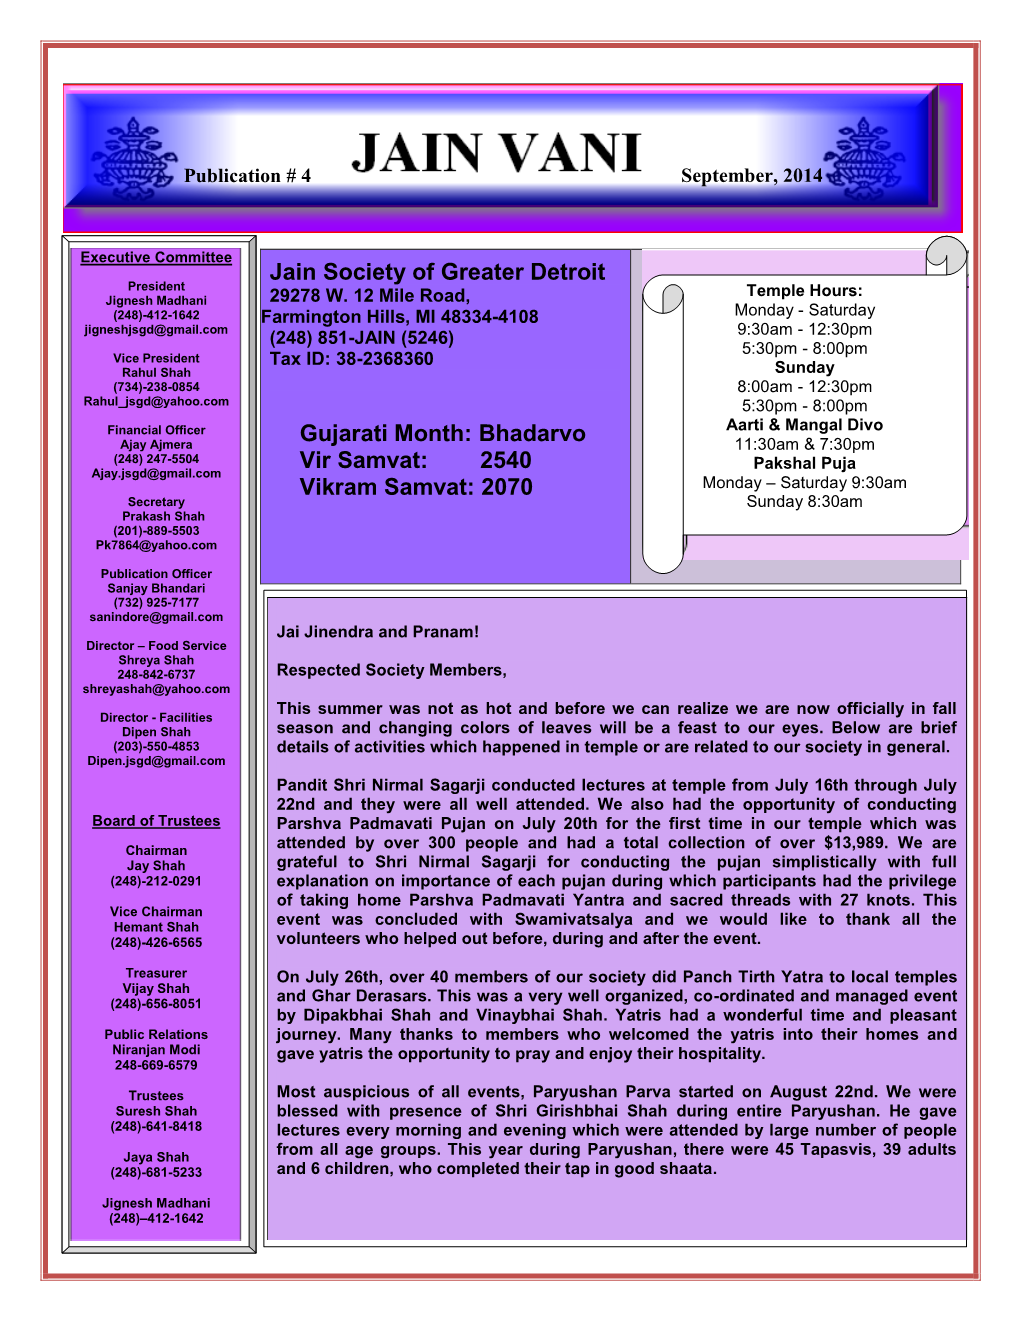 Jain Society of Greater Detroit Gujarati Month: Bhadarvo Vir Samvat: 2540 Vikram Samvat: 2070